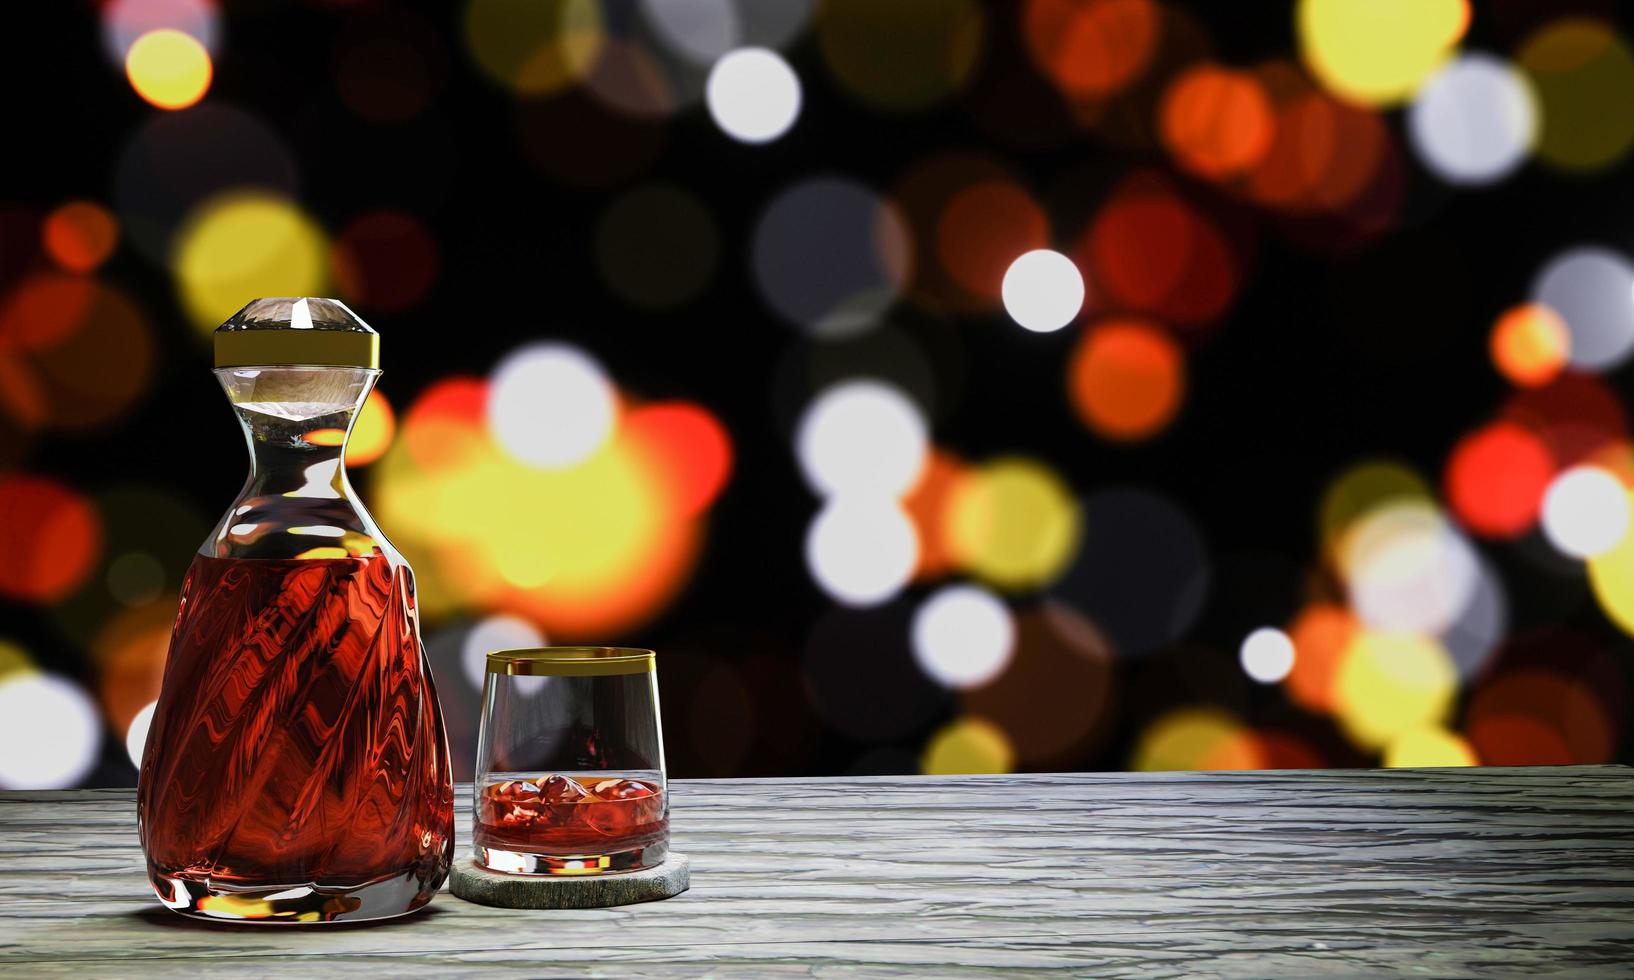 brandy ou whisky dans une élégante bouteille en verre. verres à liqueur avec des glaçons placés sur une table sur une surface en bois. fond bokeh clair. rendu 3d photo